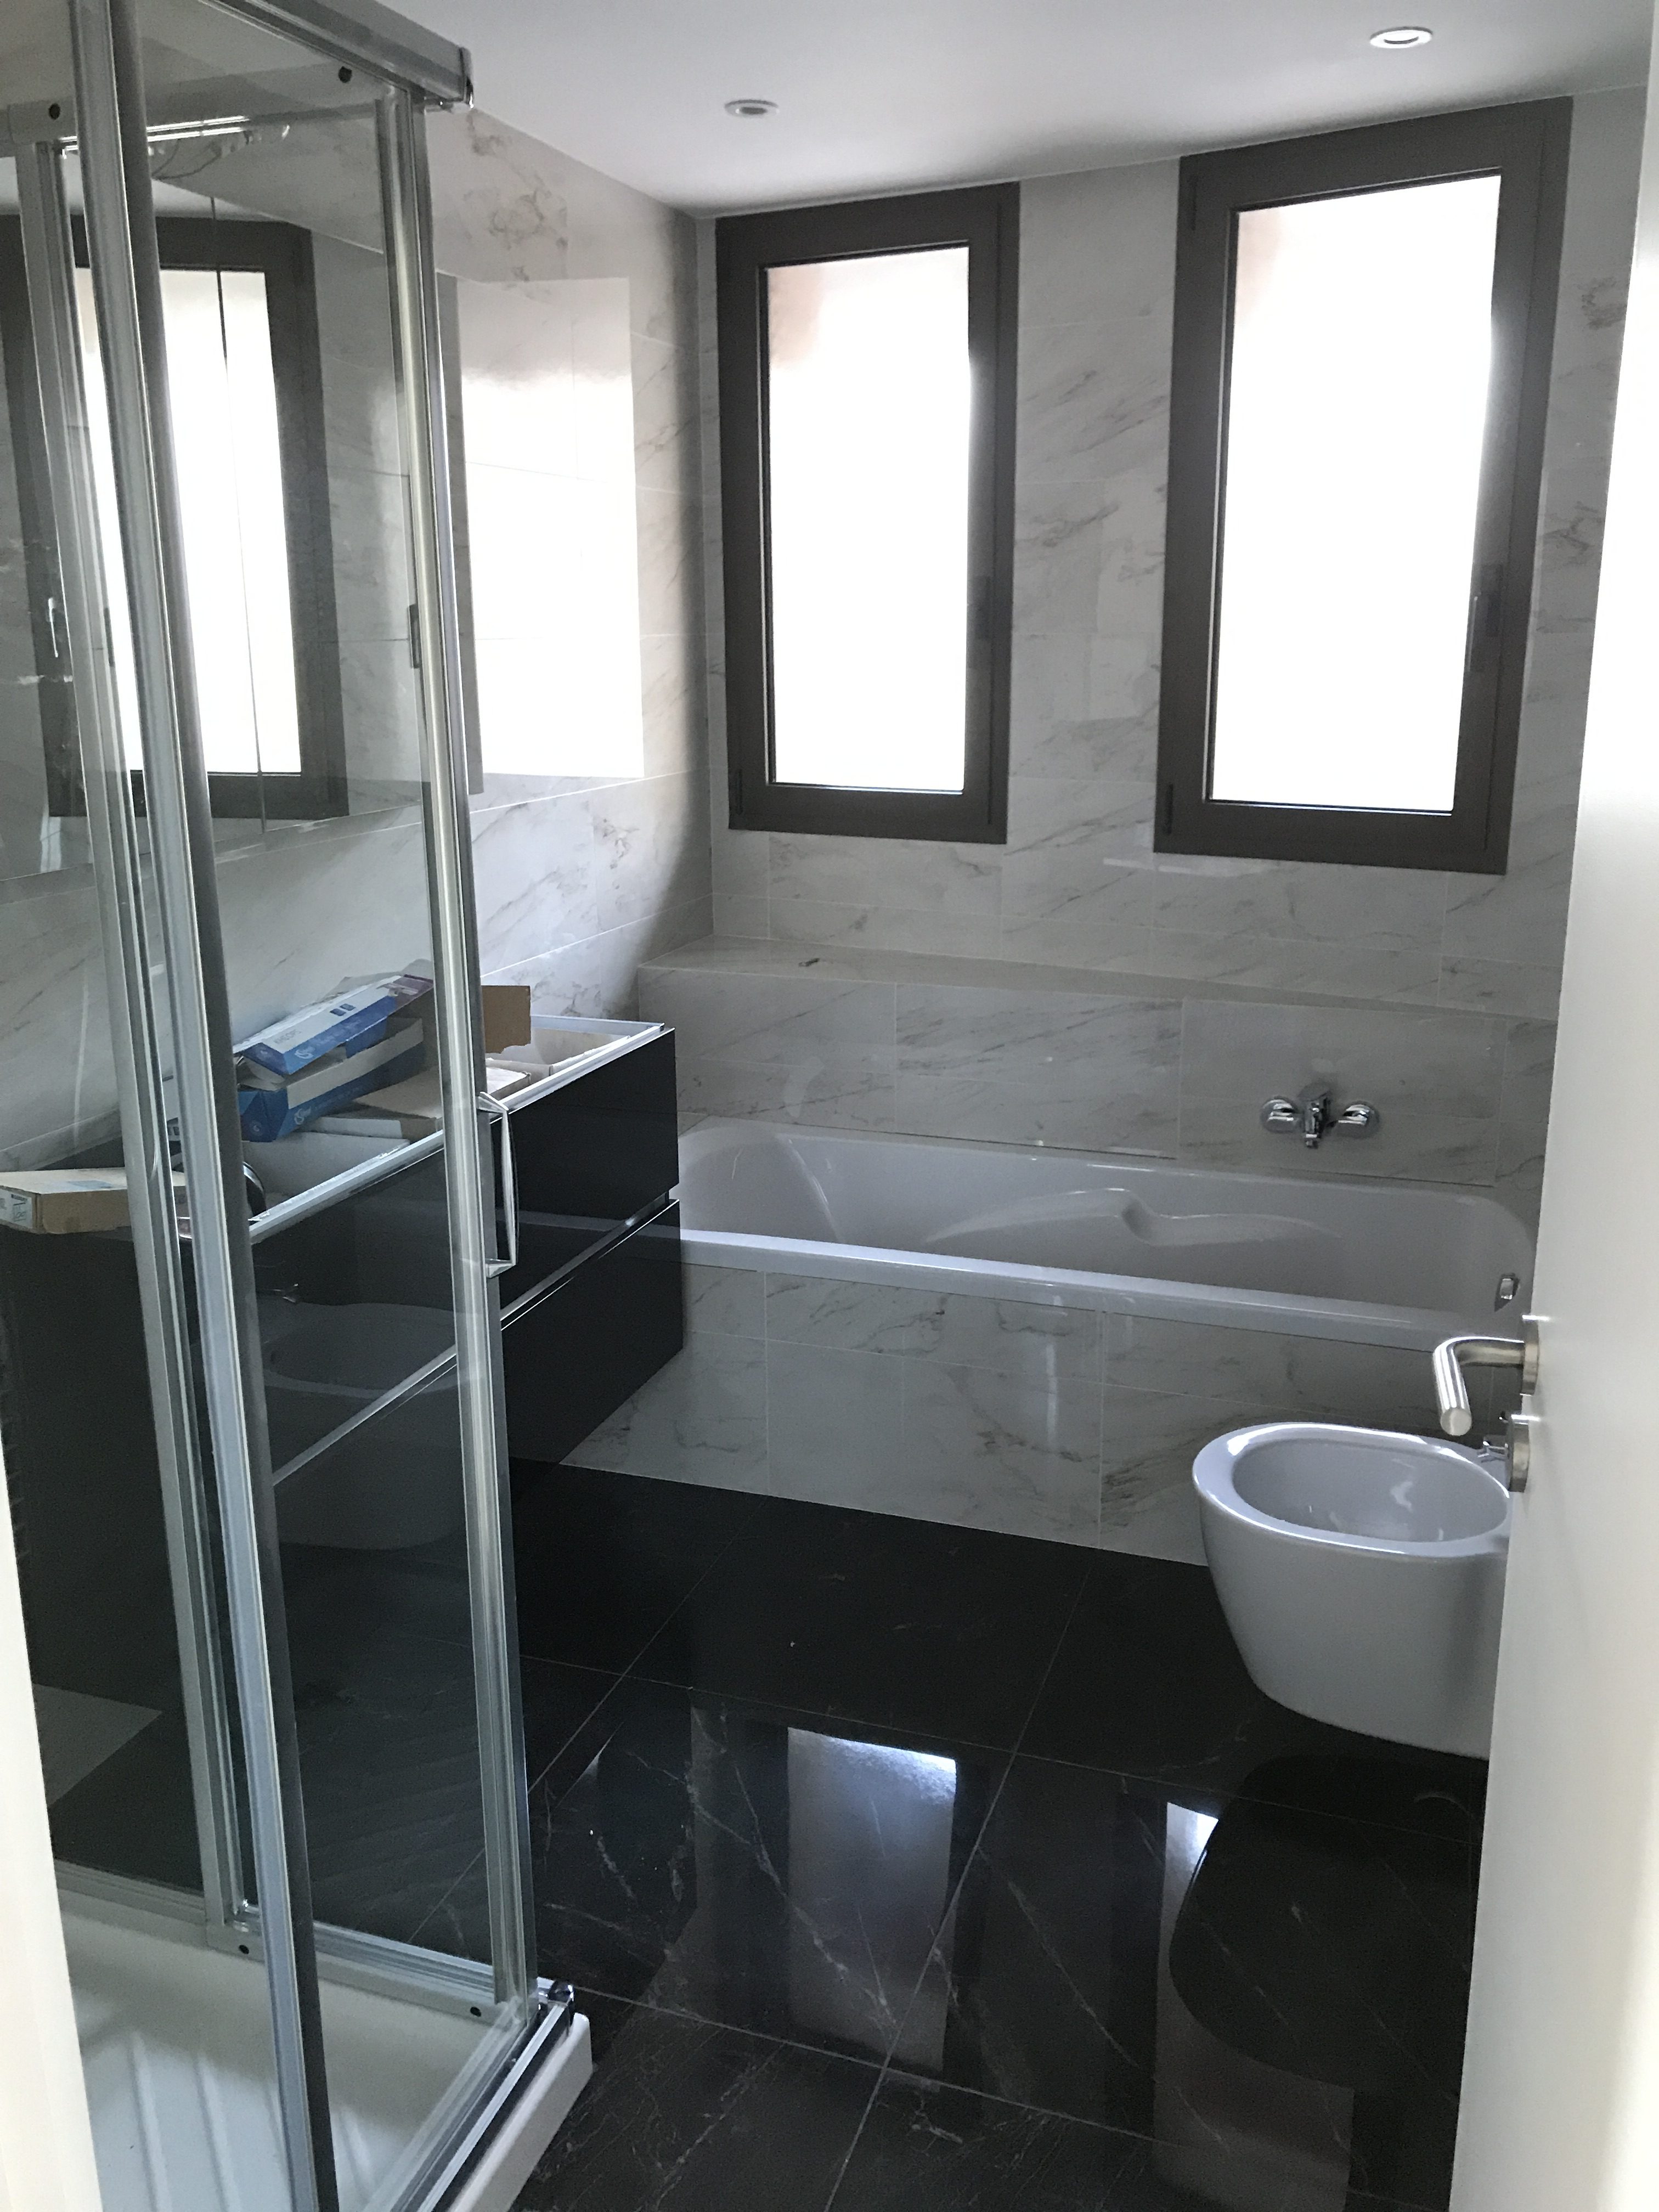 LA FELOUQUE MONACO - Rénovation complète d’un appartement de 70 m2 - Avril - Mai 2017